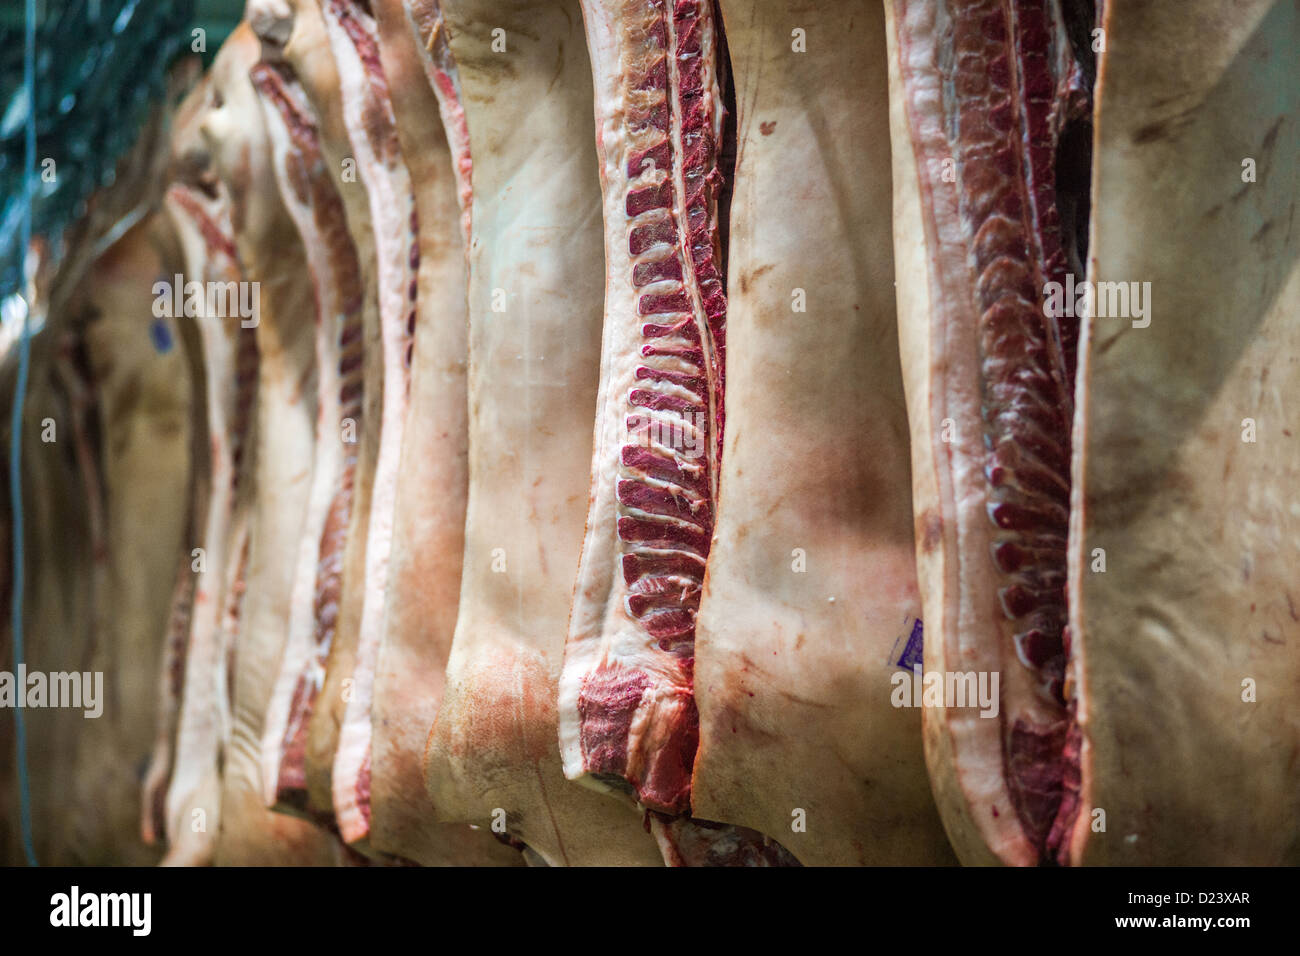 Les carcasses des porcs dans un abattoir Banque D'Images